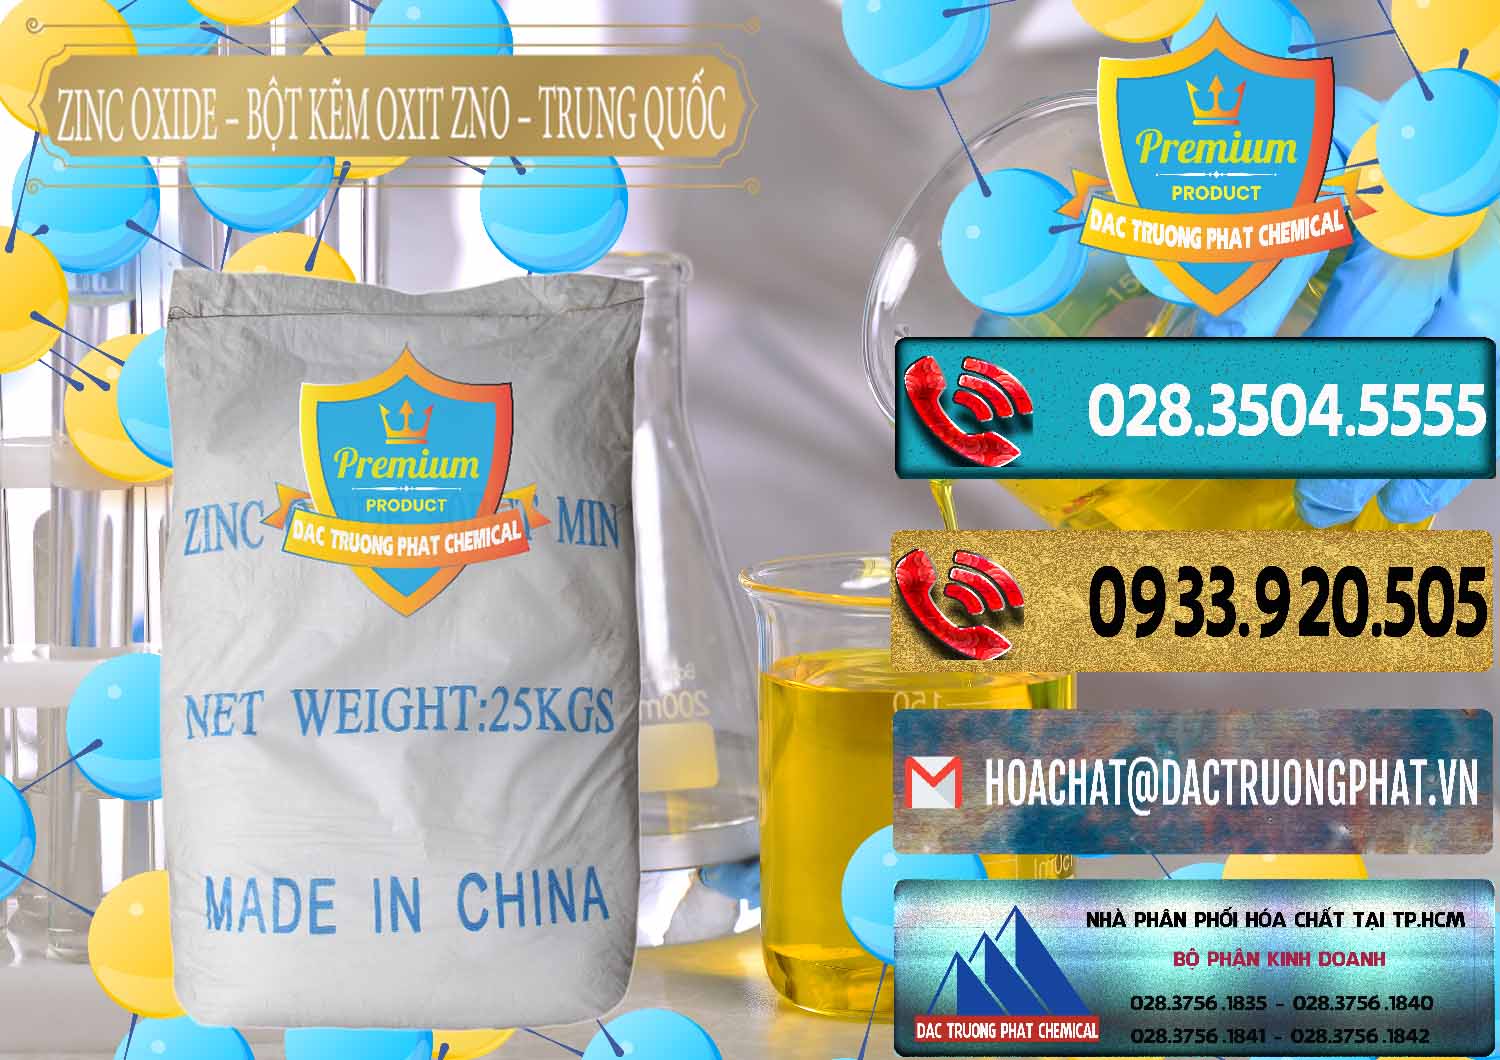 Công ty chuyên cung ứng & bán Zinc Oxide - Bột Kẽm Oxit ZNO Trung Quốc China - 0182 - Cty bán và cung cấp hóa chất tại TP.HCM - hoachatdetnhuom.com